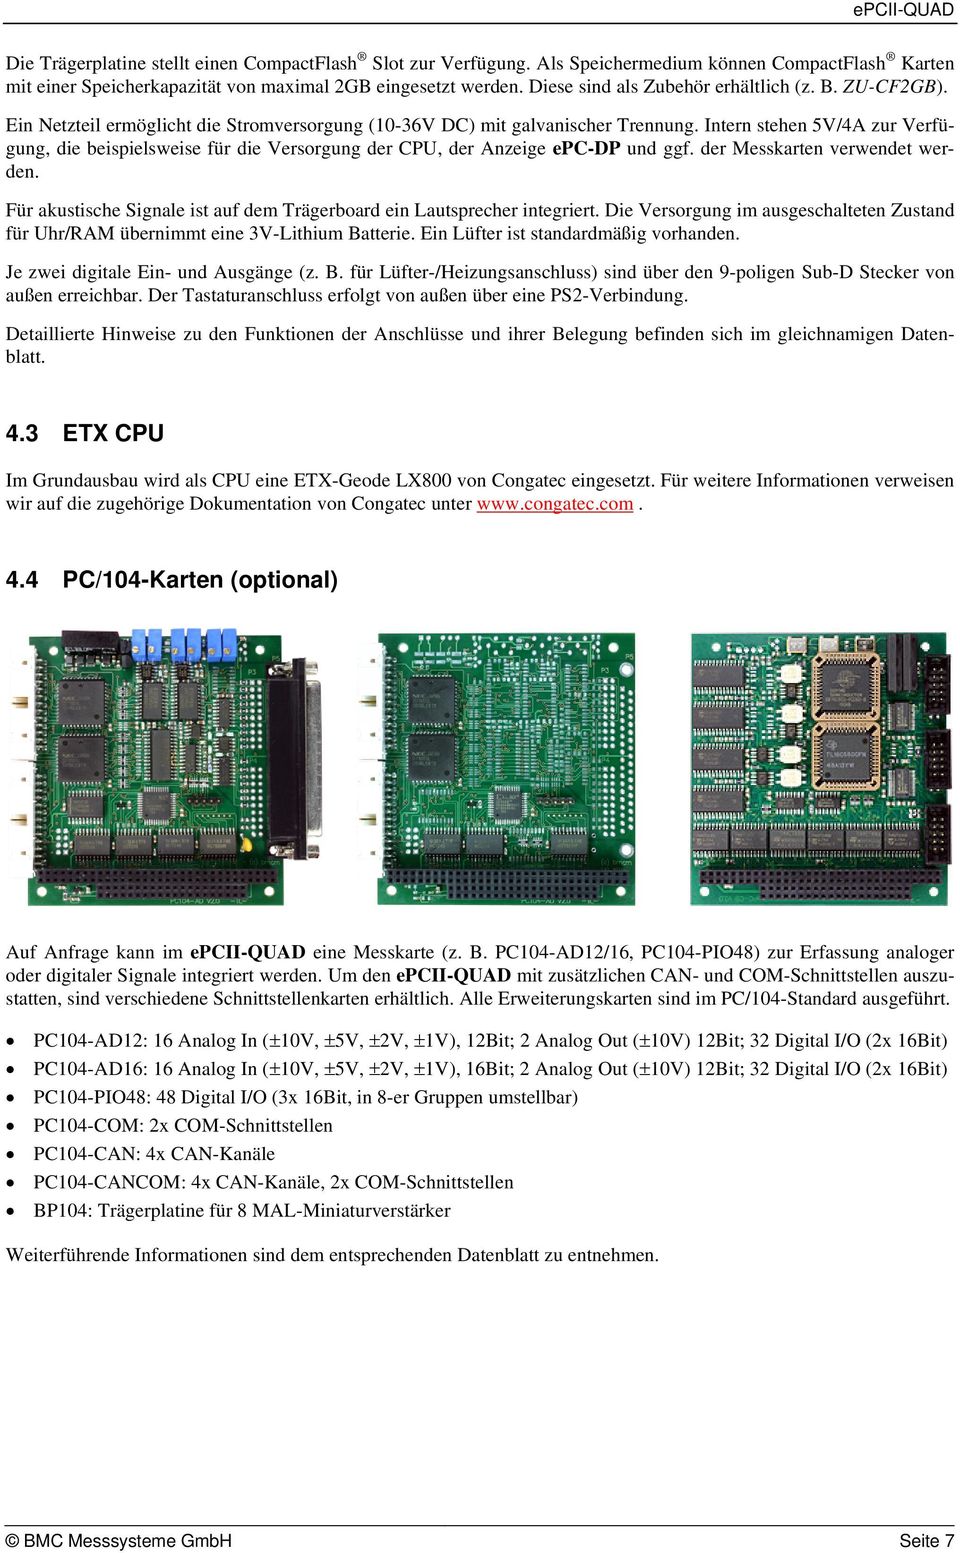 Intern stehen 5V/4A zur Verfügung, die beispielsweise für die Versorgung der CPU, der Anzeige epc-dp und ggf. der Messkarten verwendet werden.